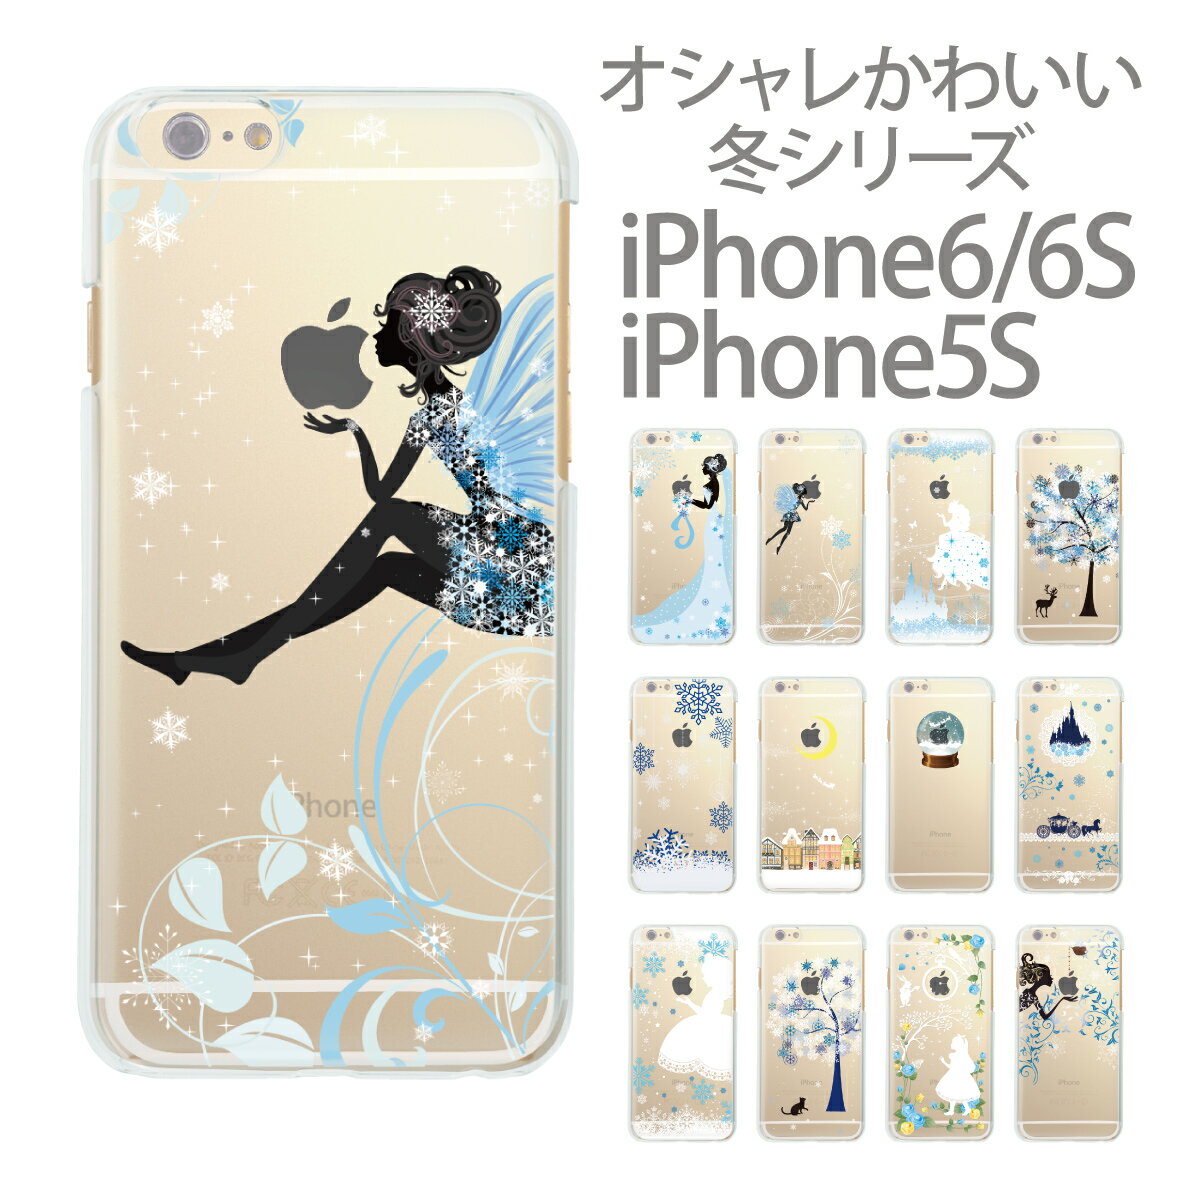 iPhone6 Plus 4.7 5.5 iPhone5s iPhone5 iPhone5c スマホケース ケース カバー クリアケース ハードケース かわいい 白雪姫 アリス 97-ip6-021